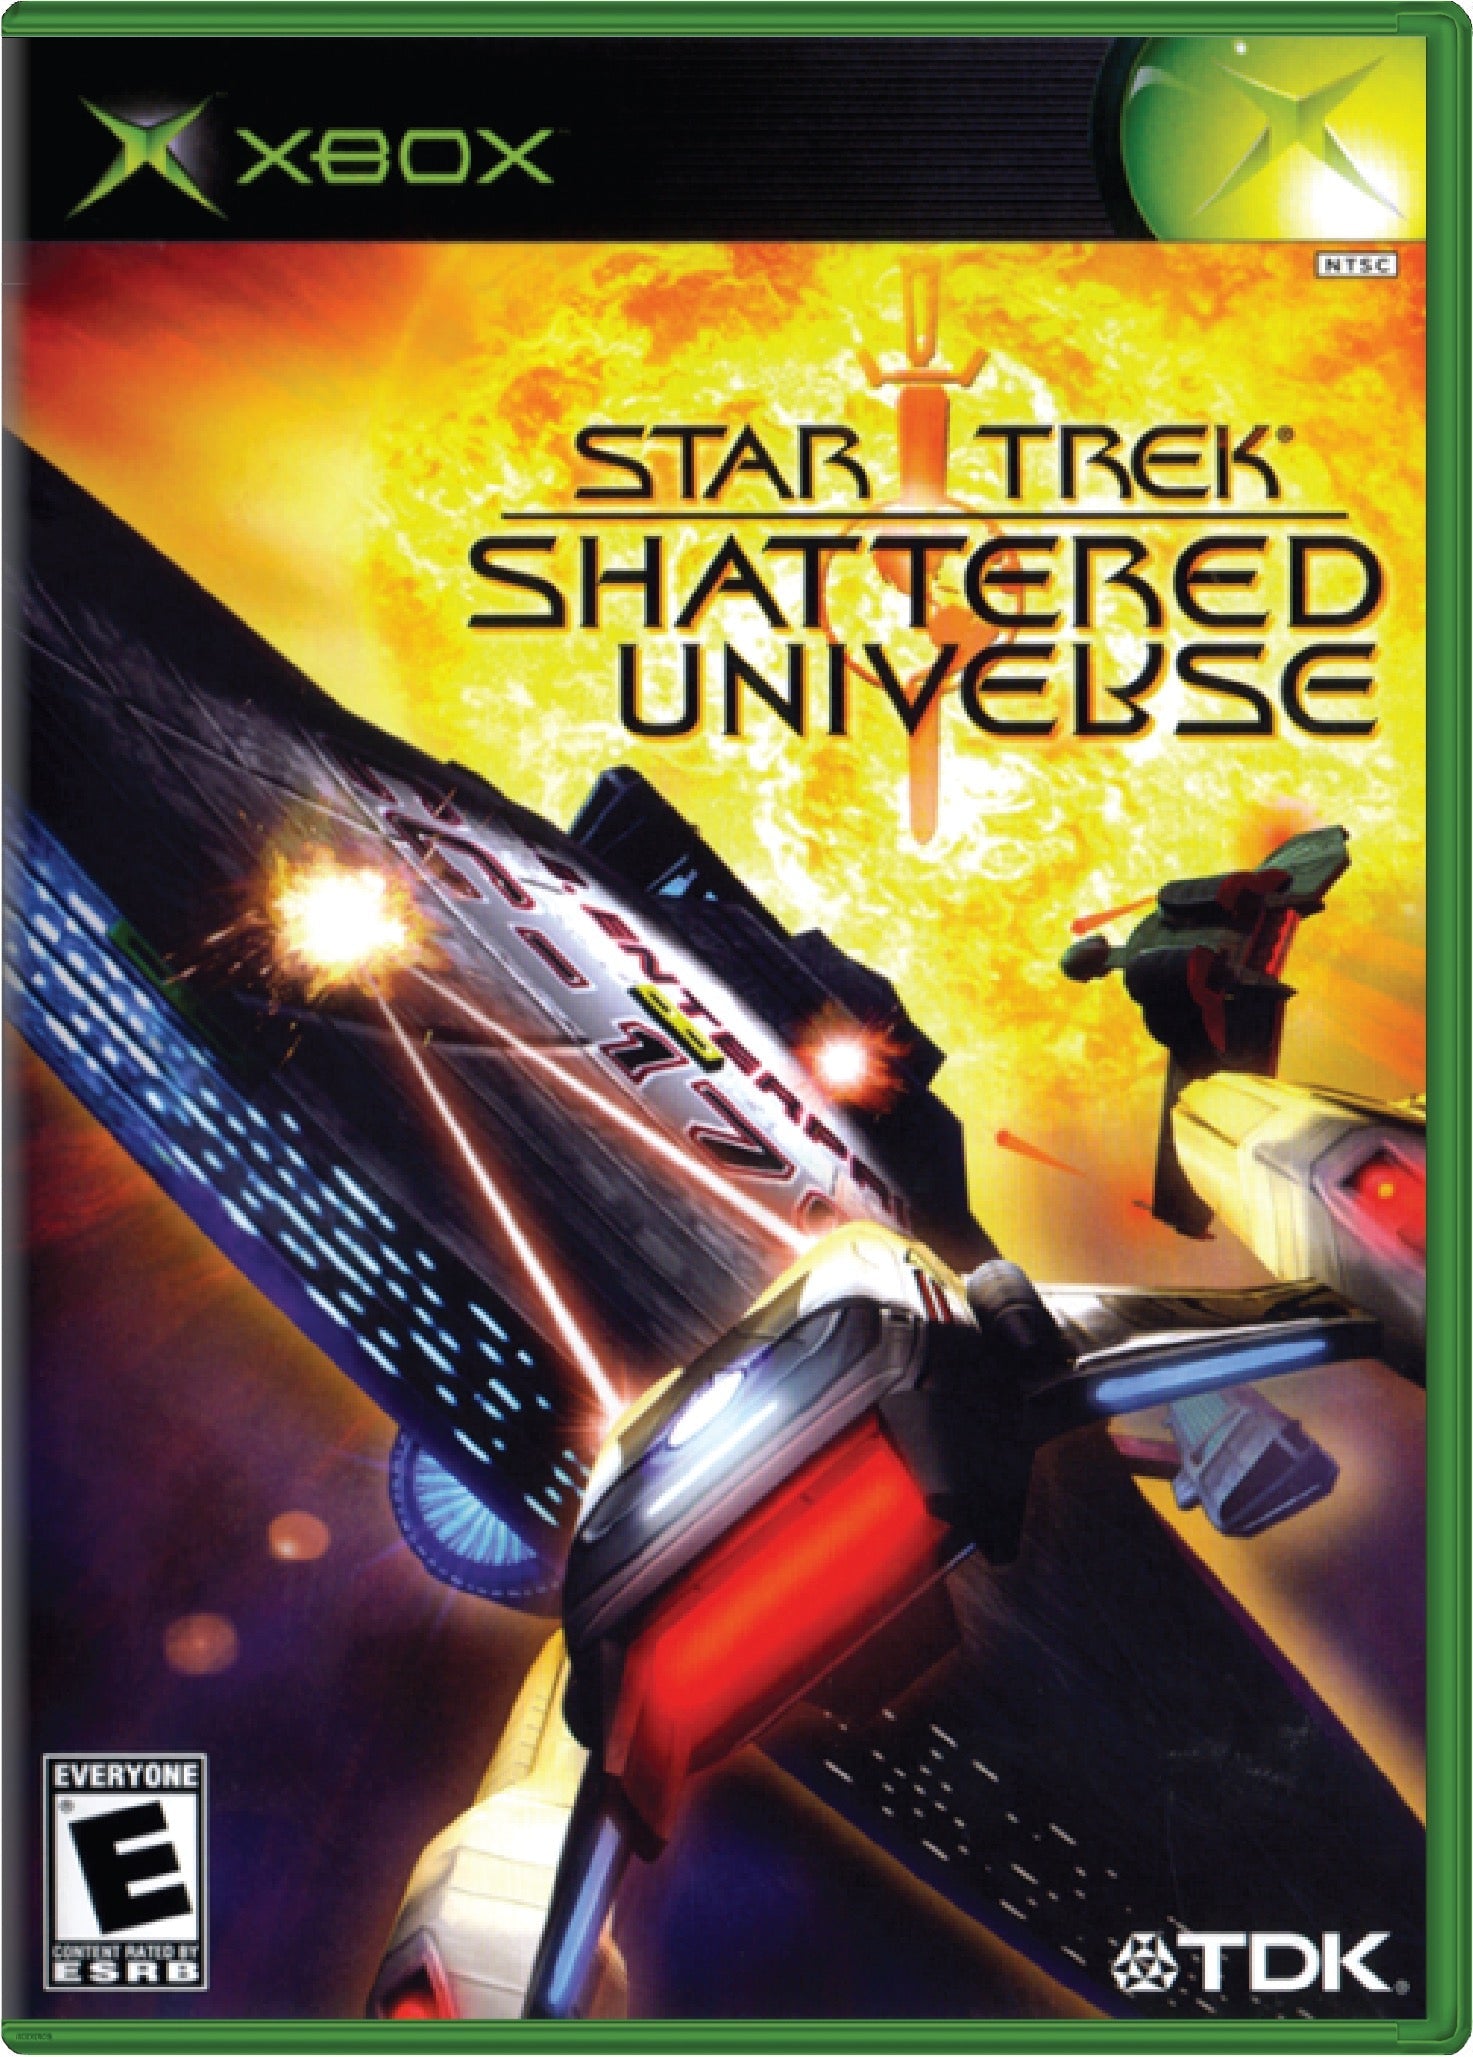 Star Trek Shattered Universe Cover Art